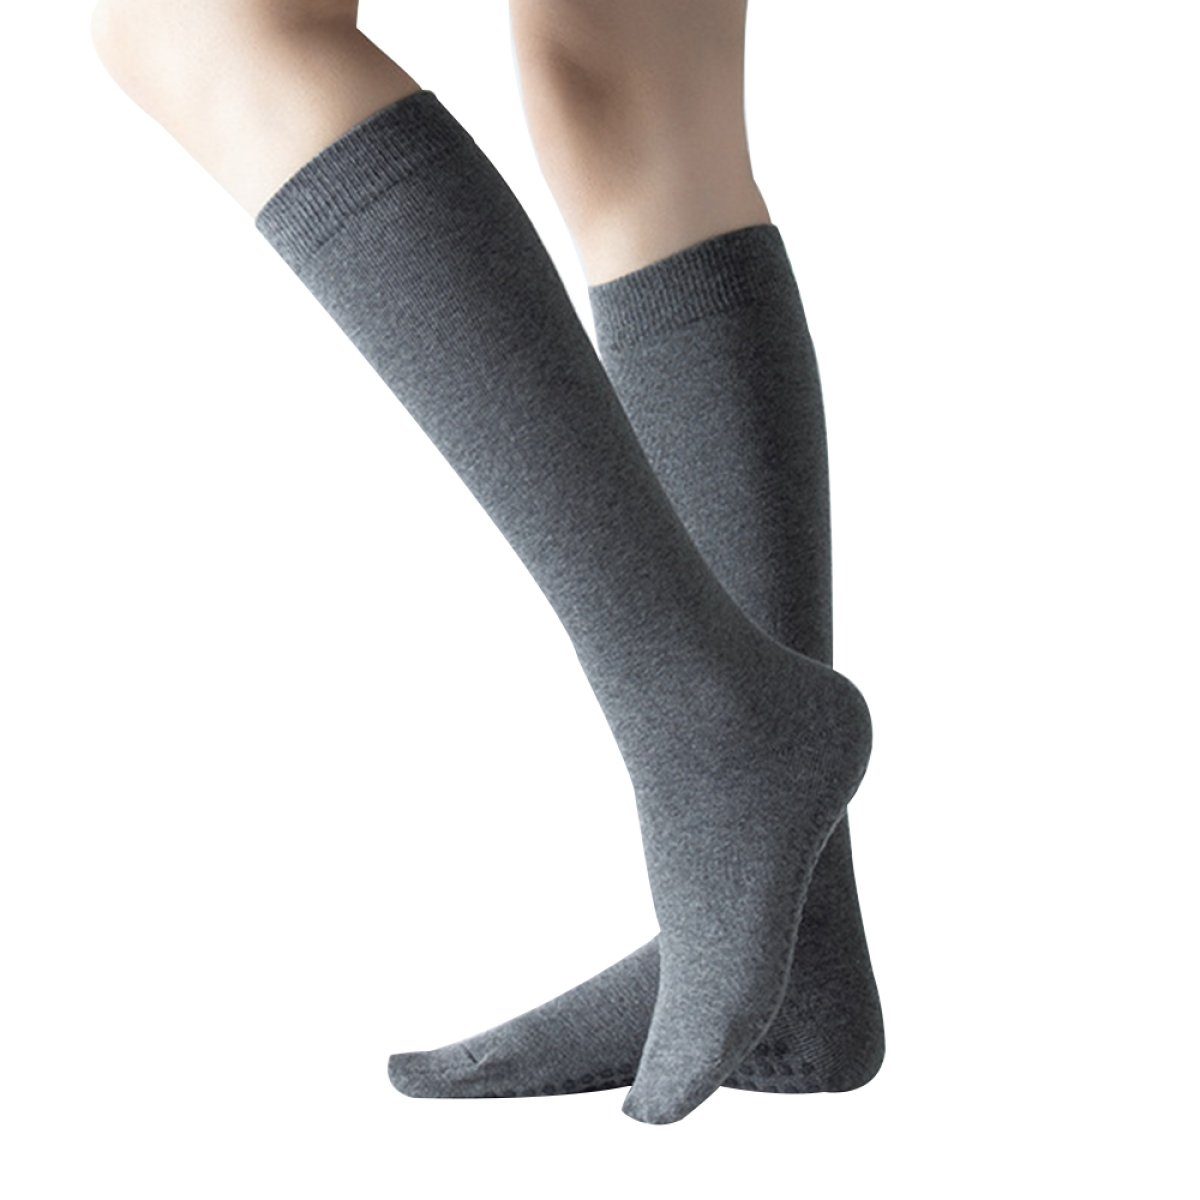 Einemgeld Damen Socken Kniestrümpfe Einfarbige Klassische Grau Socken/Kniestrümpfe Ladies/College